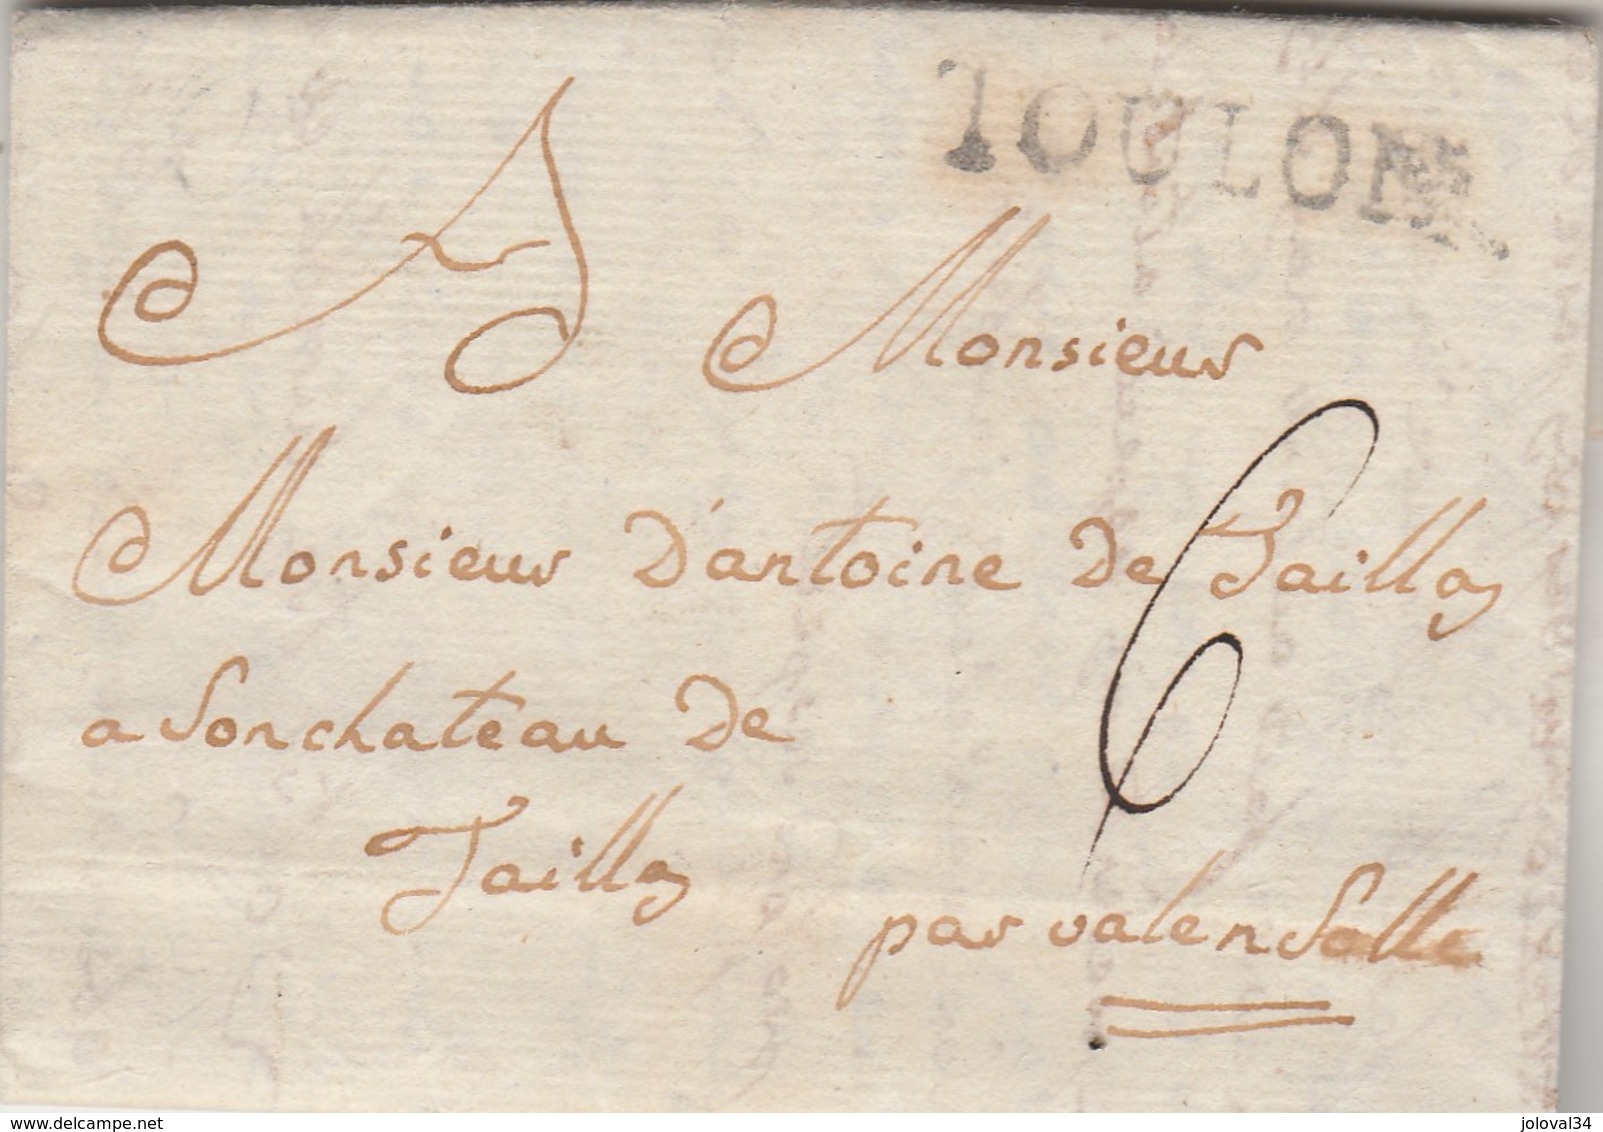 Lettre Privée Marque Postale TOULON Var 6/10/1783 à Château De Jaikllay ? Valensole Basses Alpes Scellé Armoiries - 1701-1800: Précurseurs XVIII